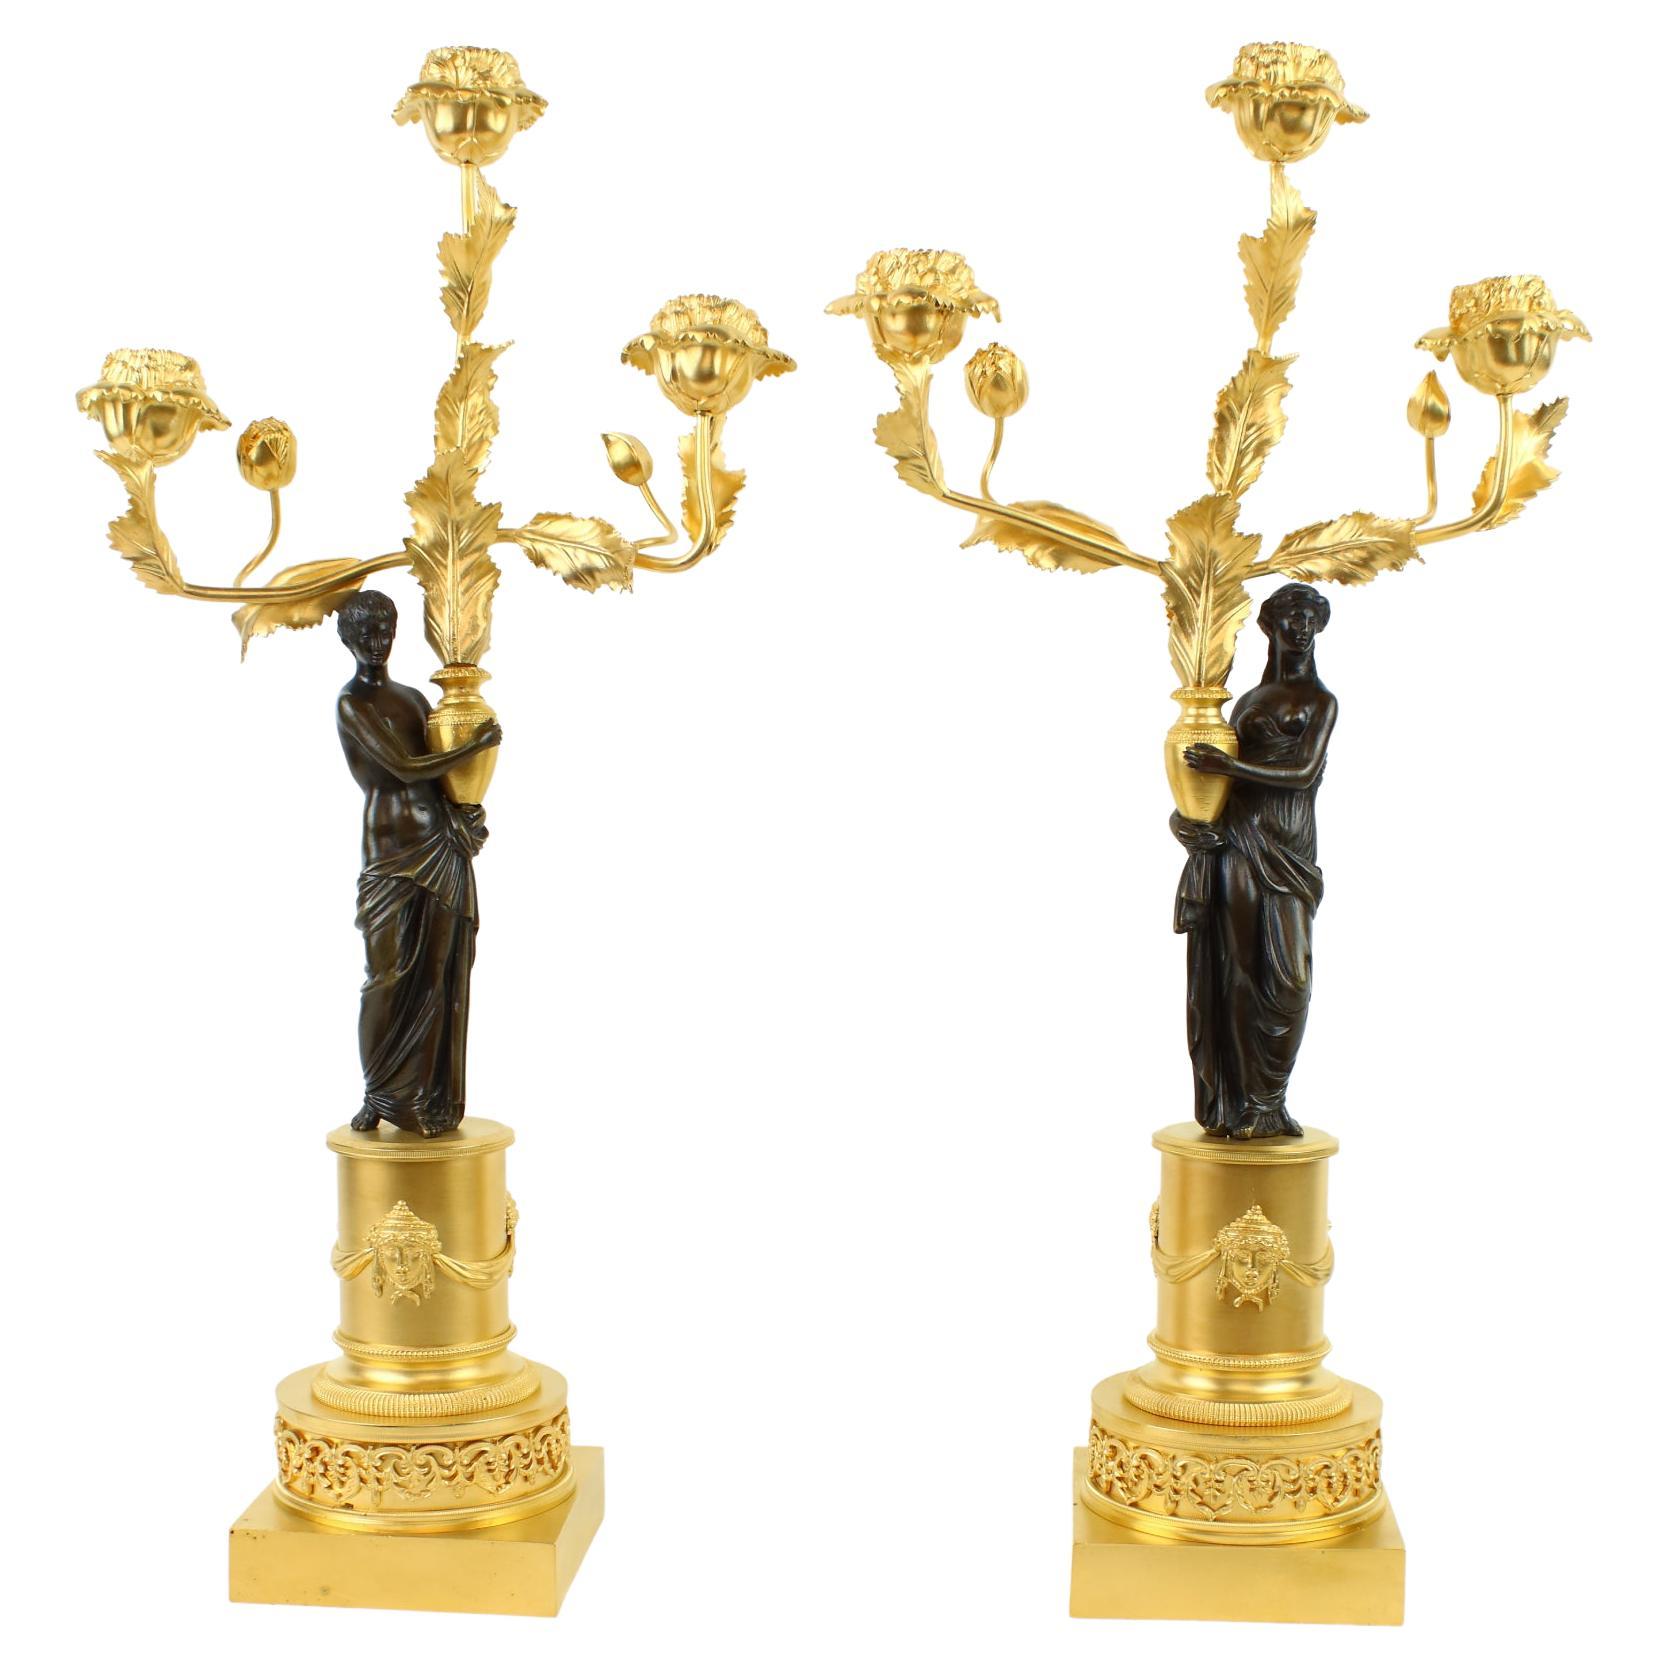 Paire de candélabres russes figuratifs en bronze doré et patiné du 18e/19e siècle